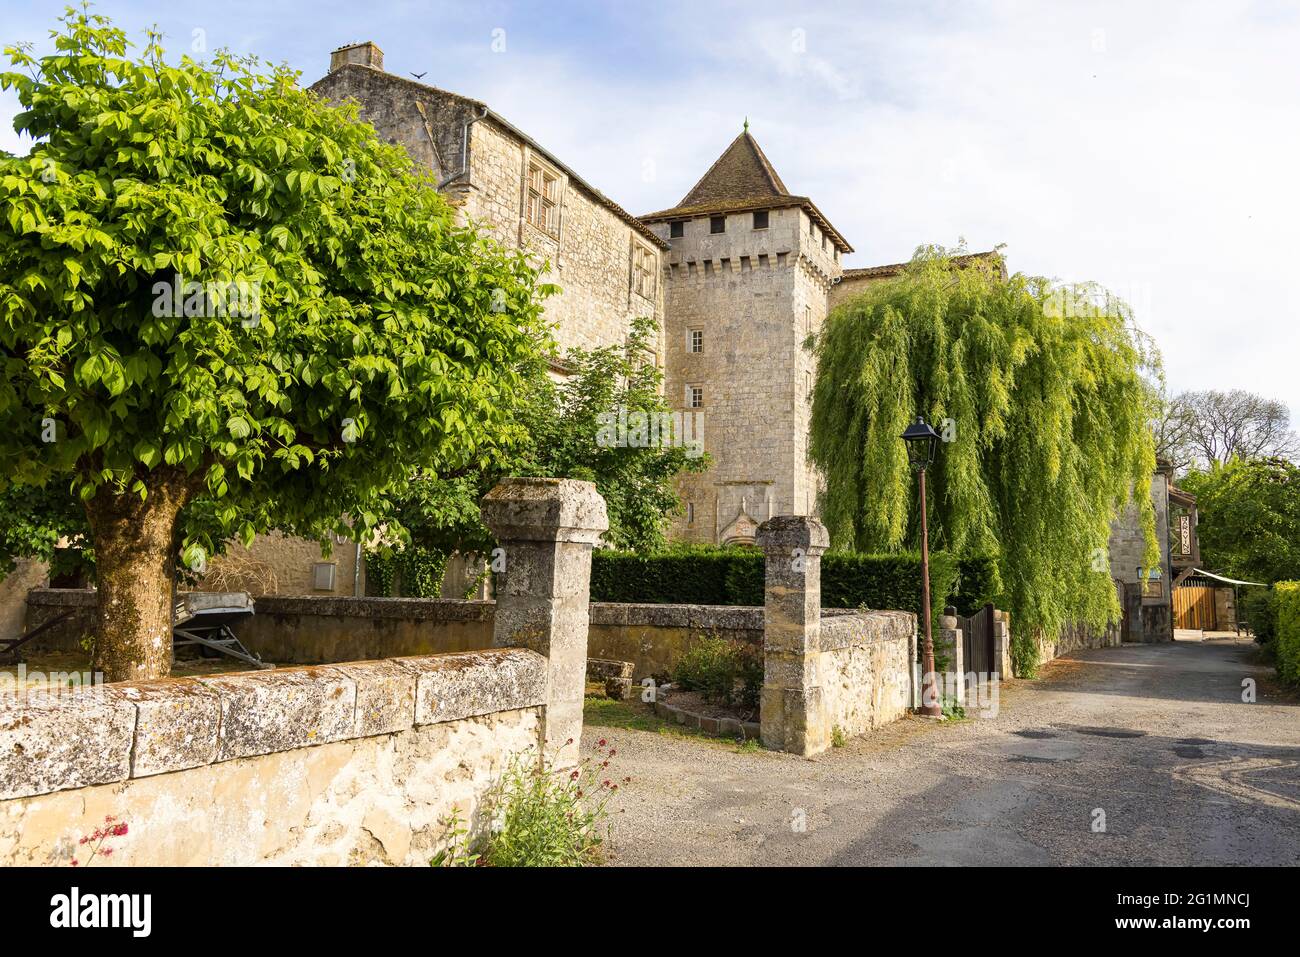 France, Gers, Fources, labelled Les Plus Beaux Villages de France (The Most Beautiful Villages of France), the castle Stock Photo